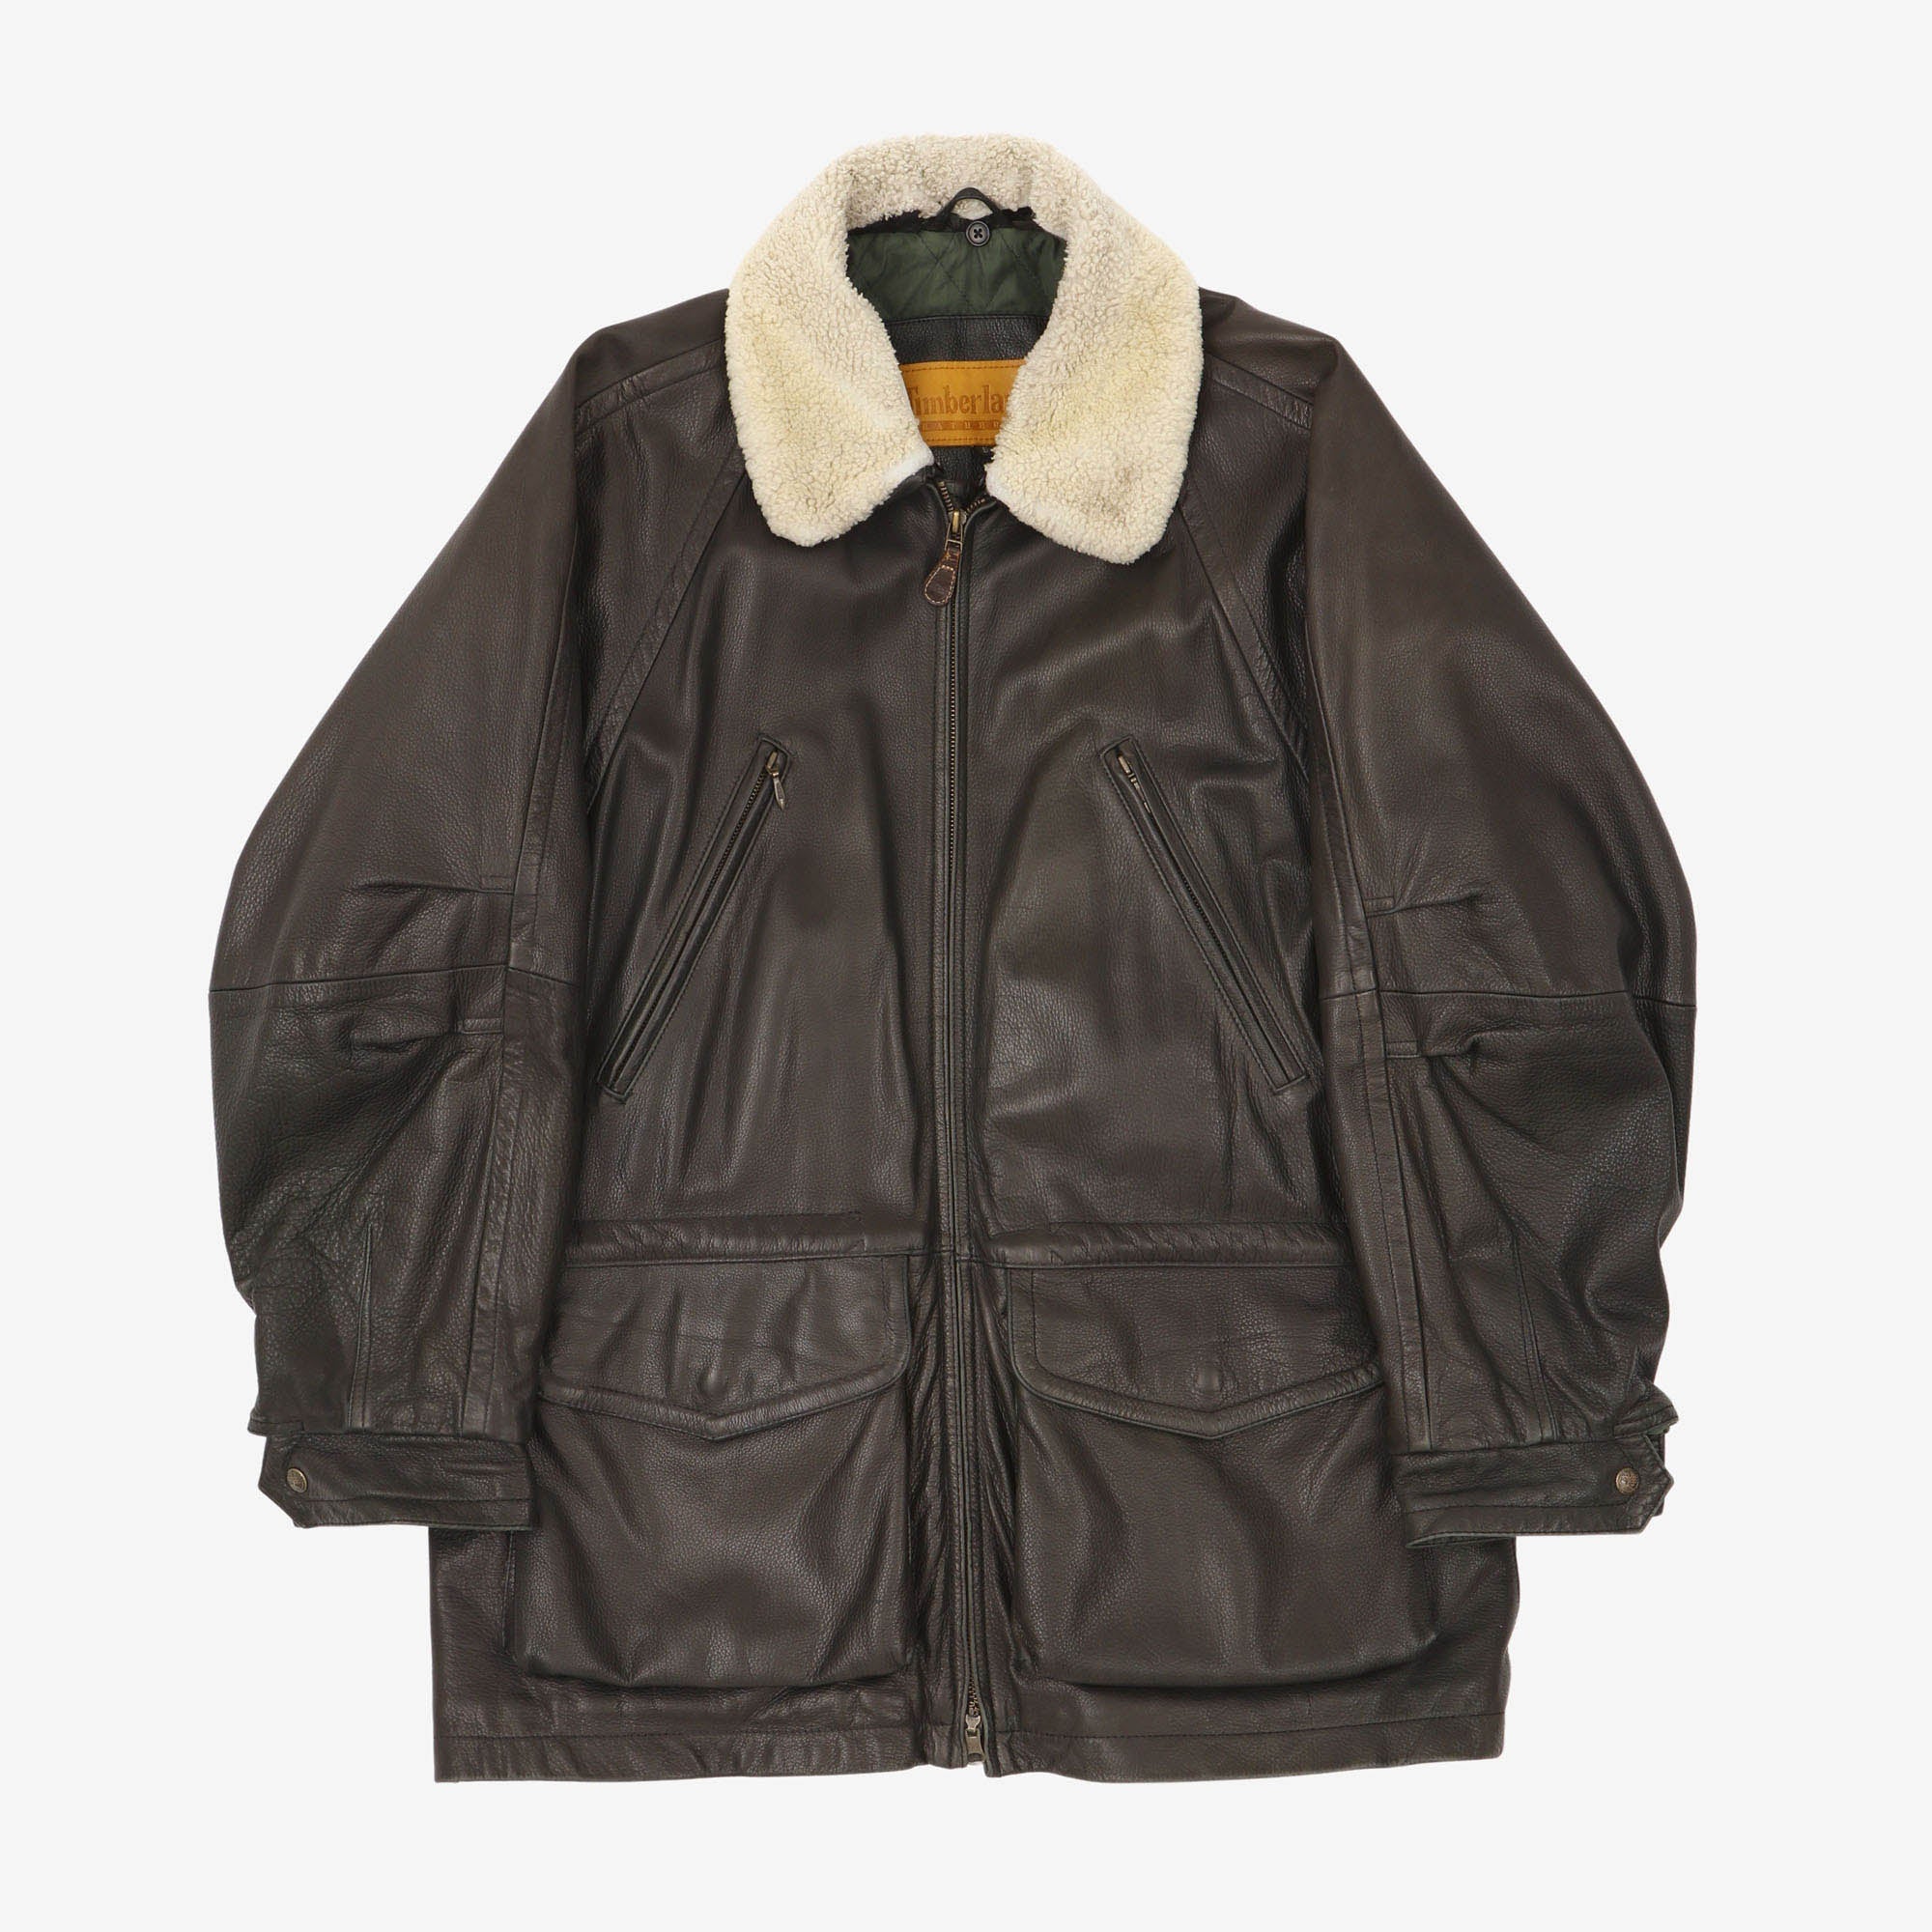 Vintage Leather Jacket –